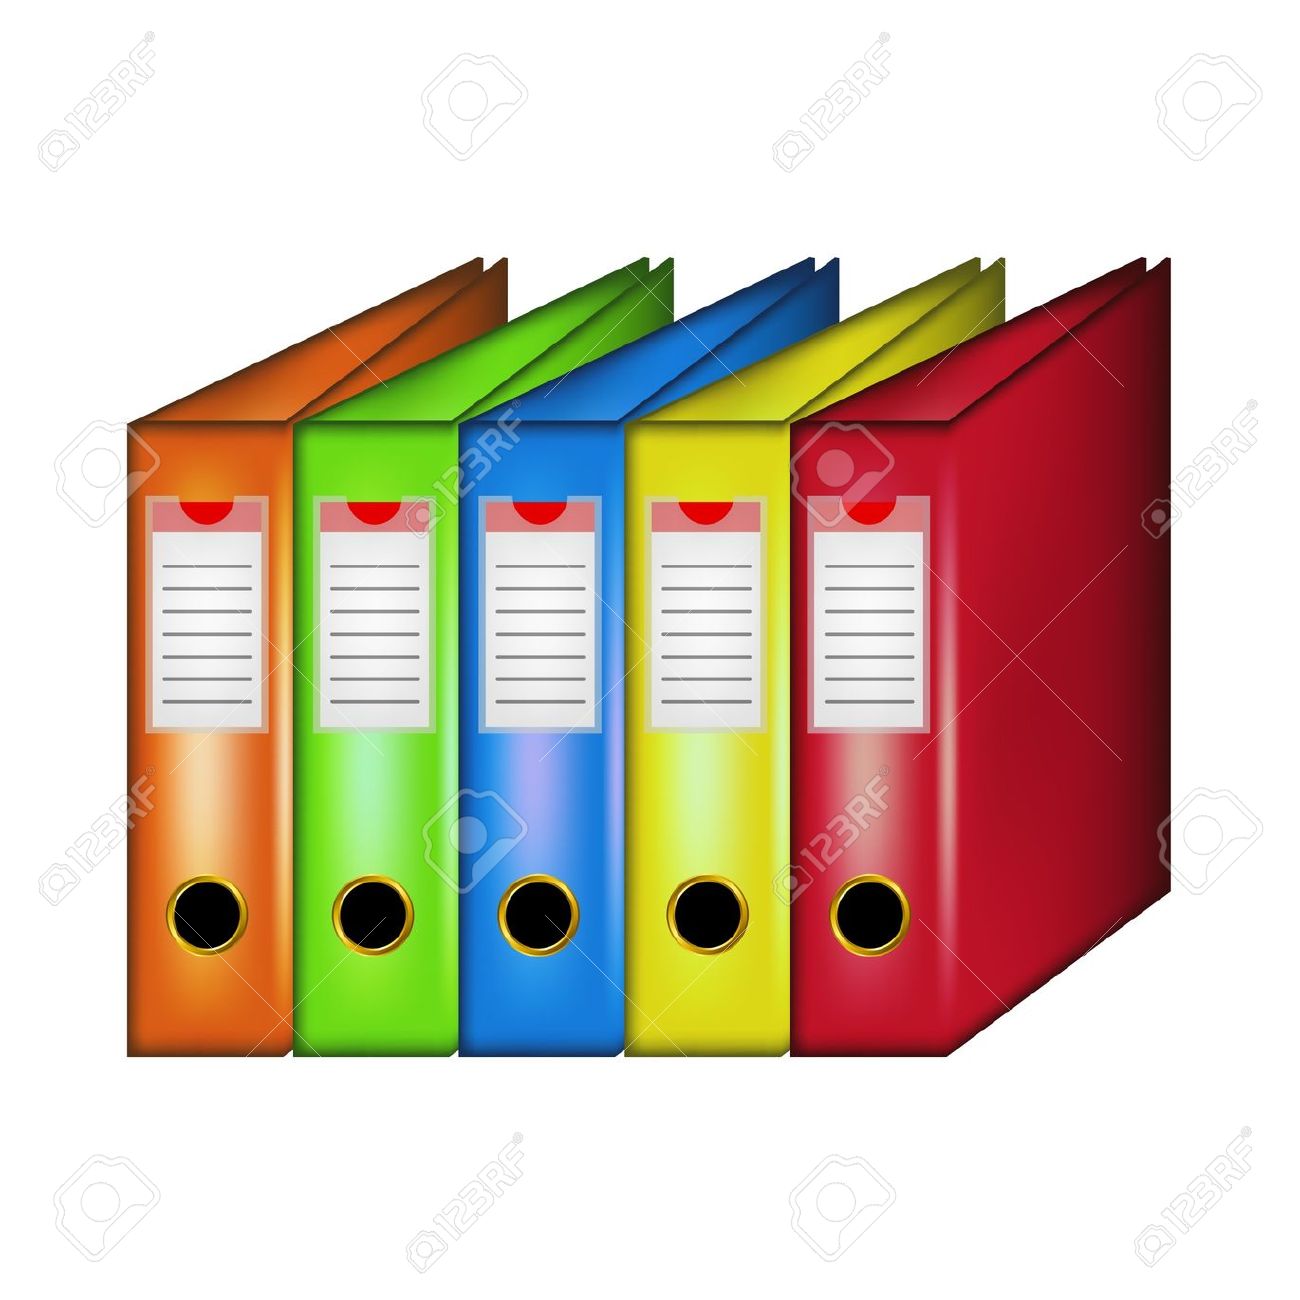 Binder clipart office file, Binder office file Transparent